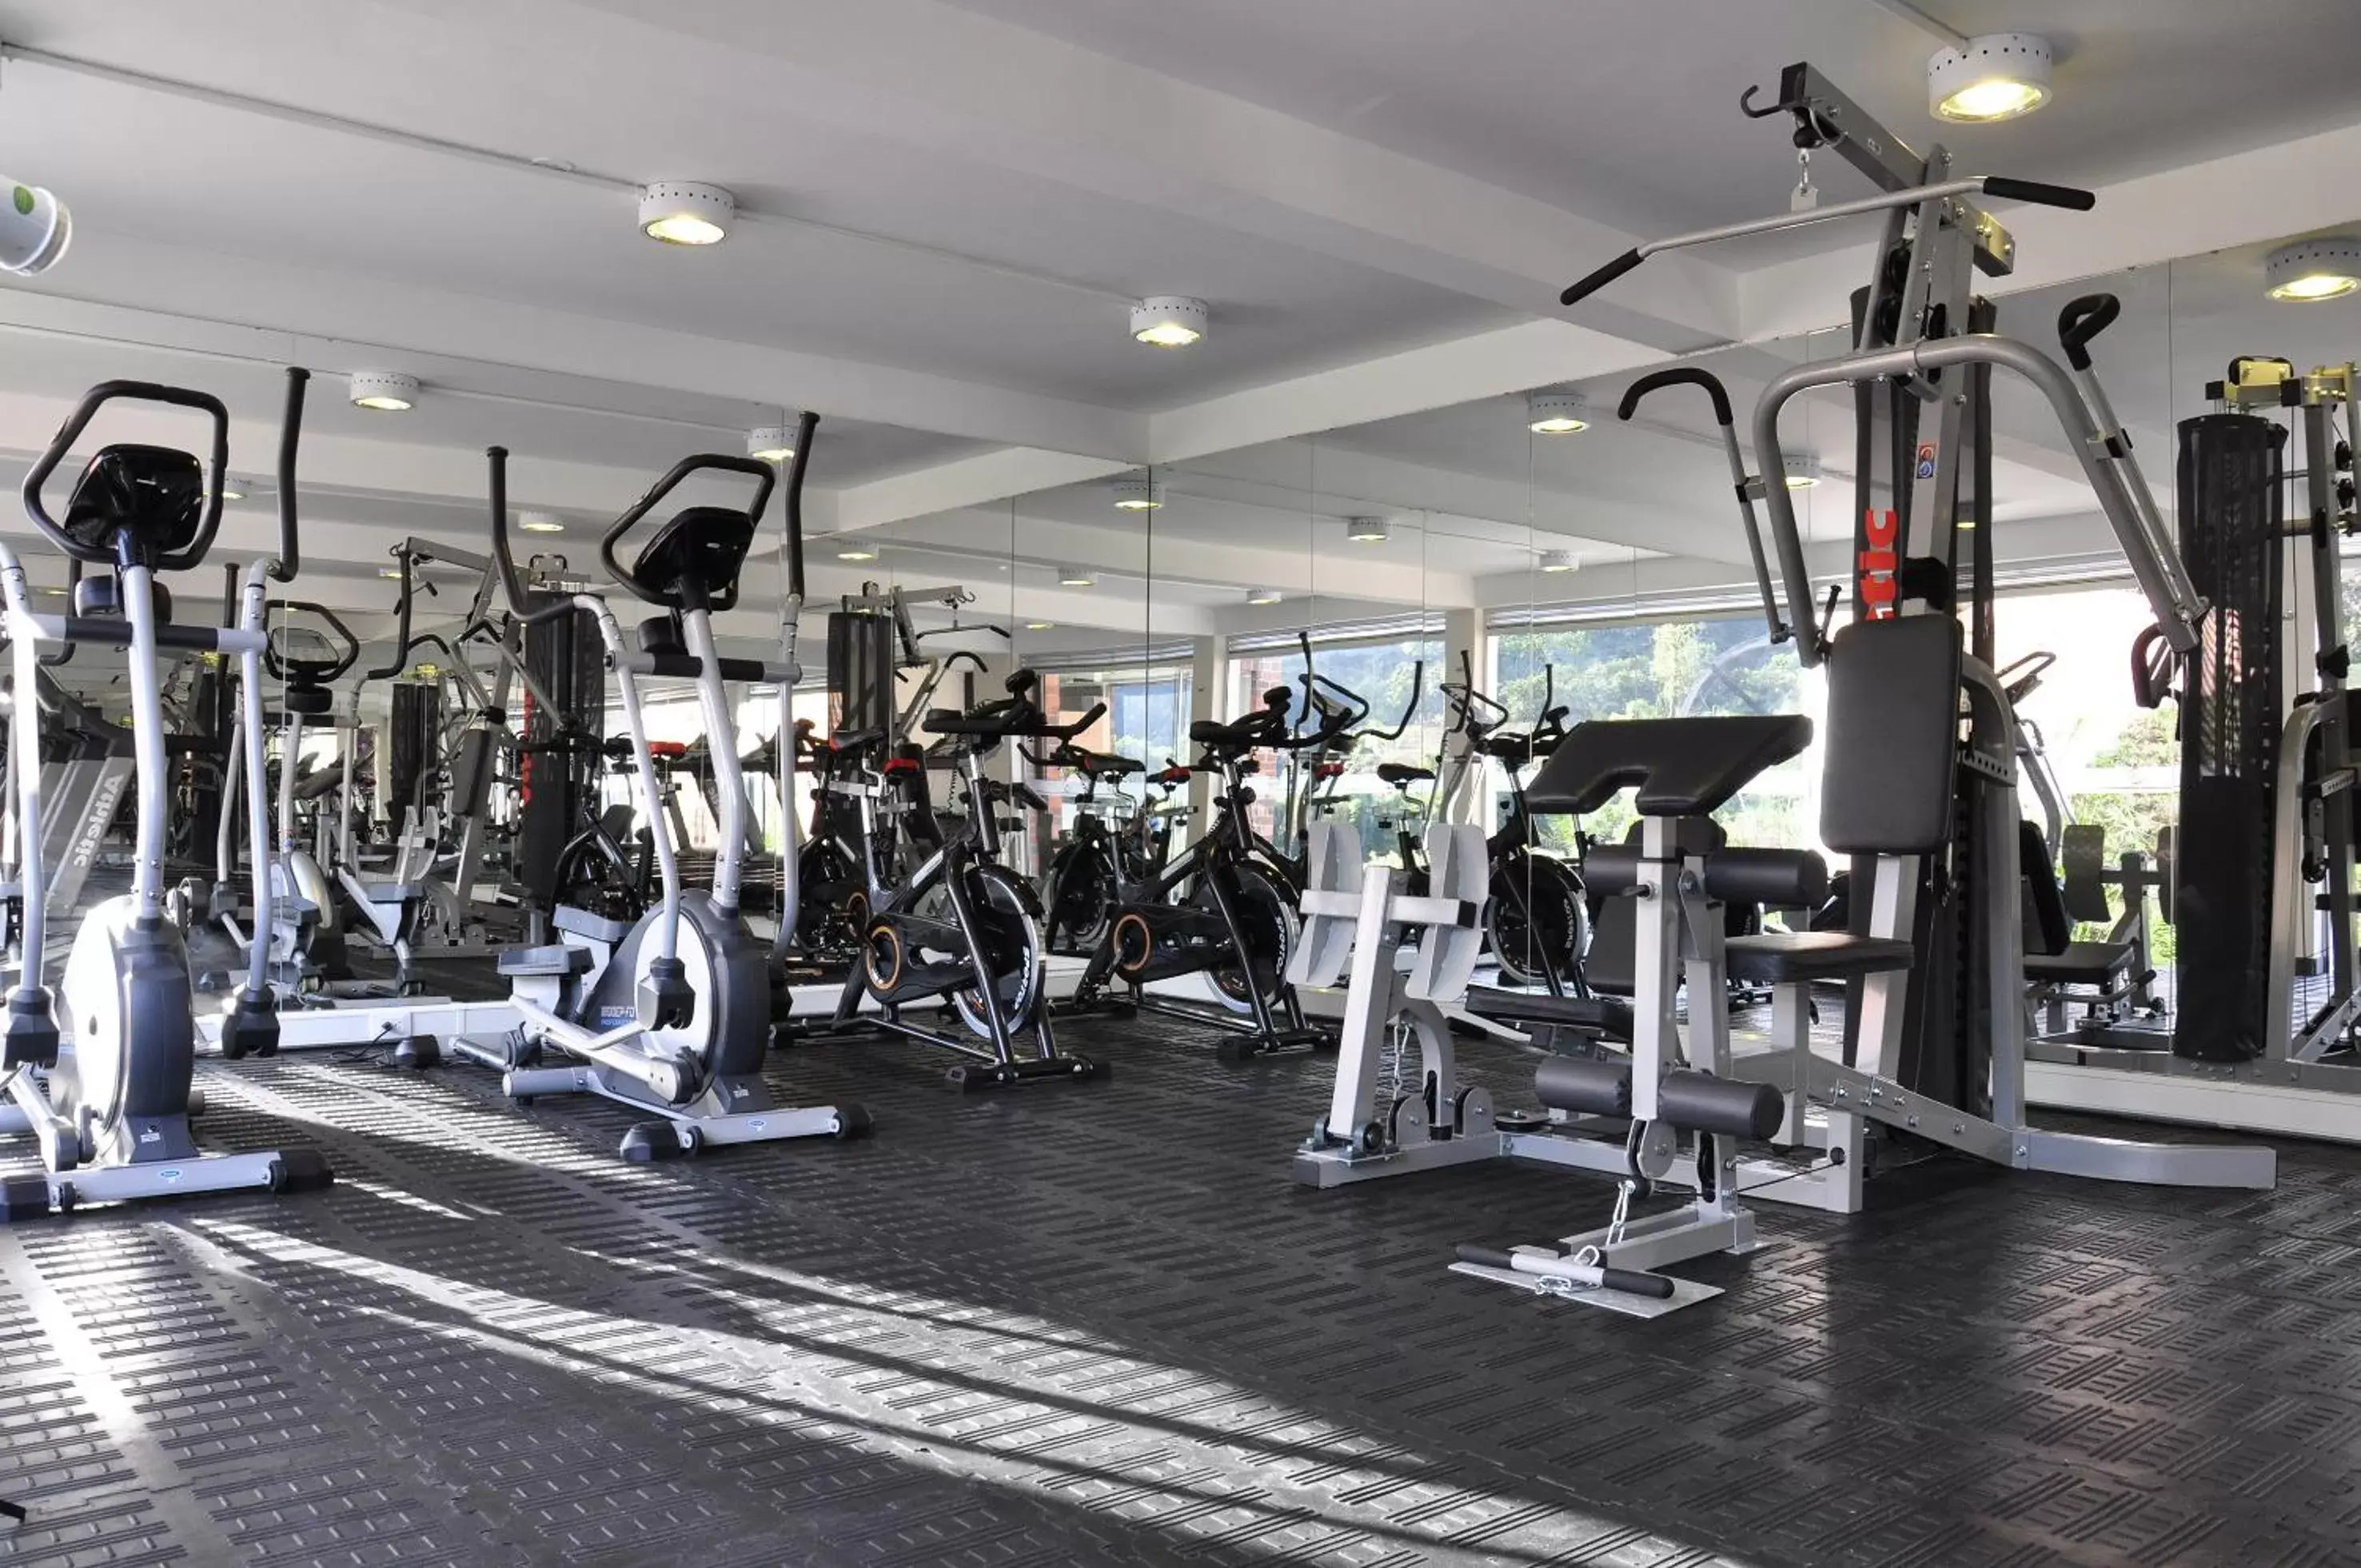 Fitness centre/facilities, Fitness Center/Facilities in Estelar Recinto Del Pensamiento Hotel Y Centro De Convenciones